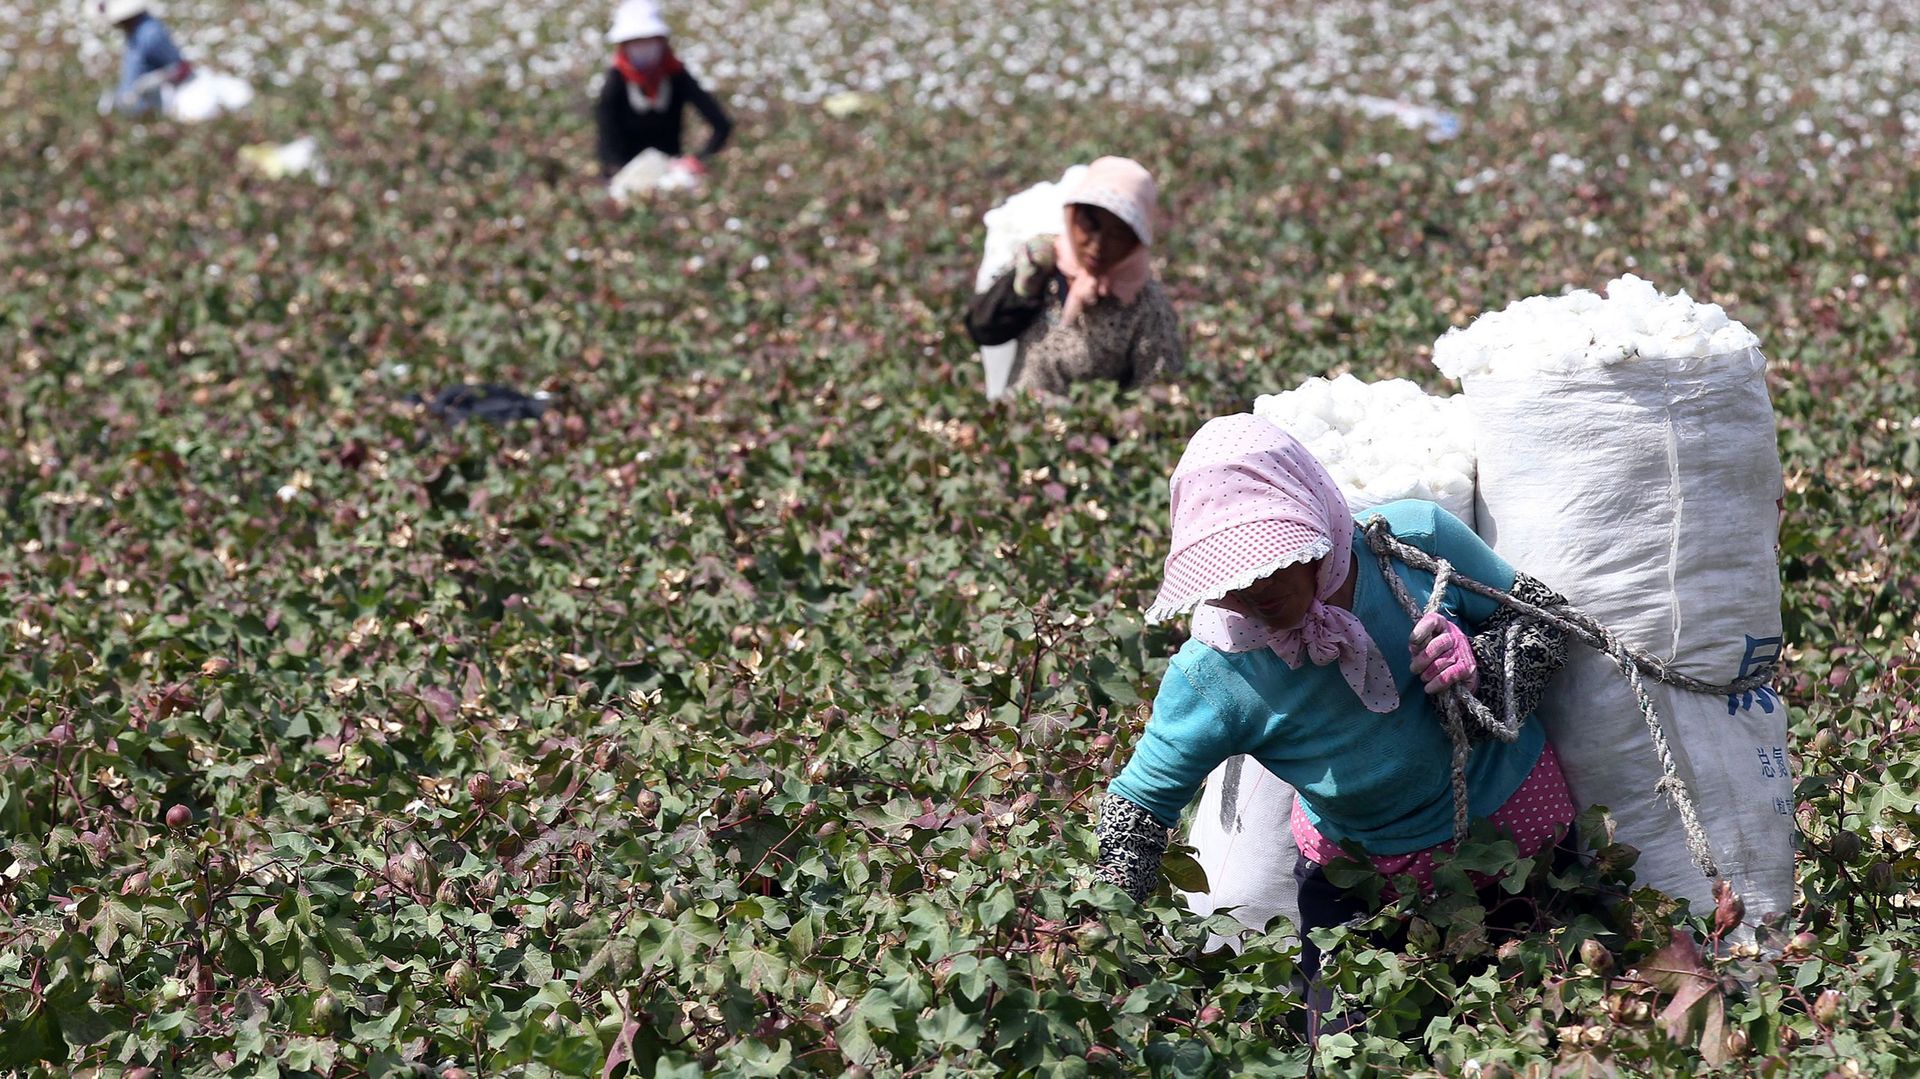 La récolte du coton est réputée harassante et mal payée. Des centaines de milliers de Ouïghours seraient forcés d’y participer.